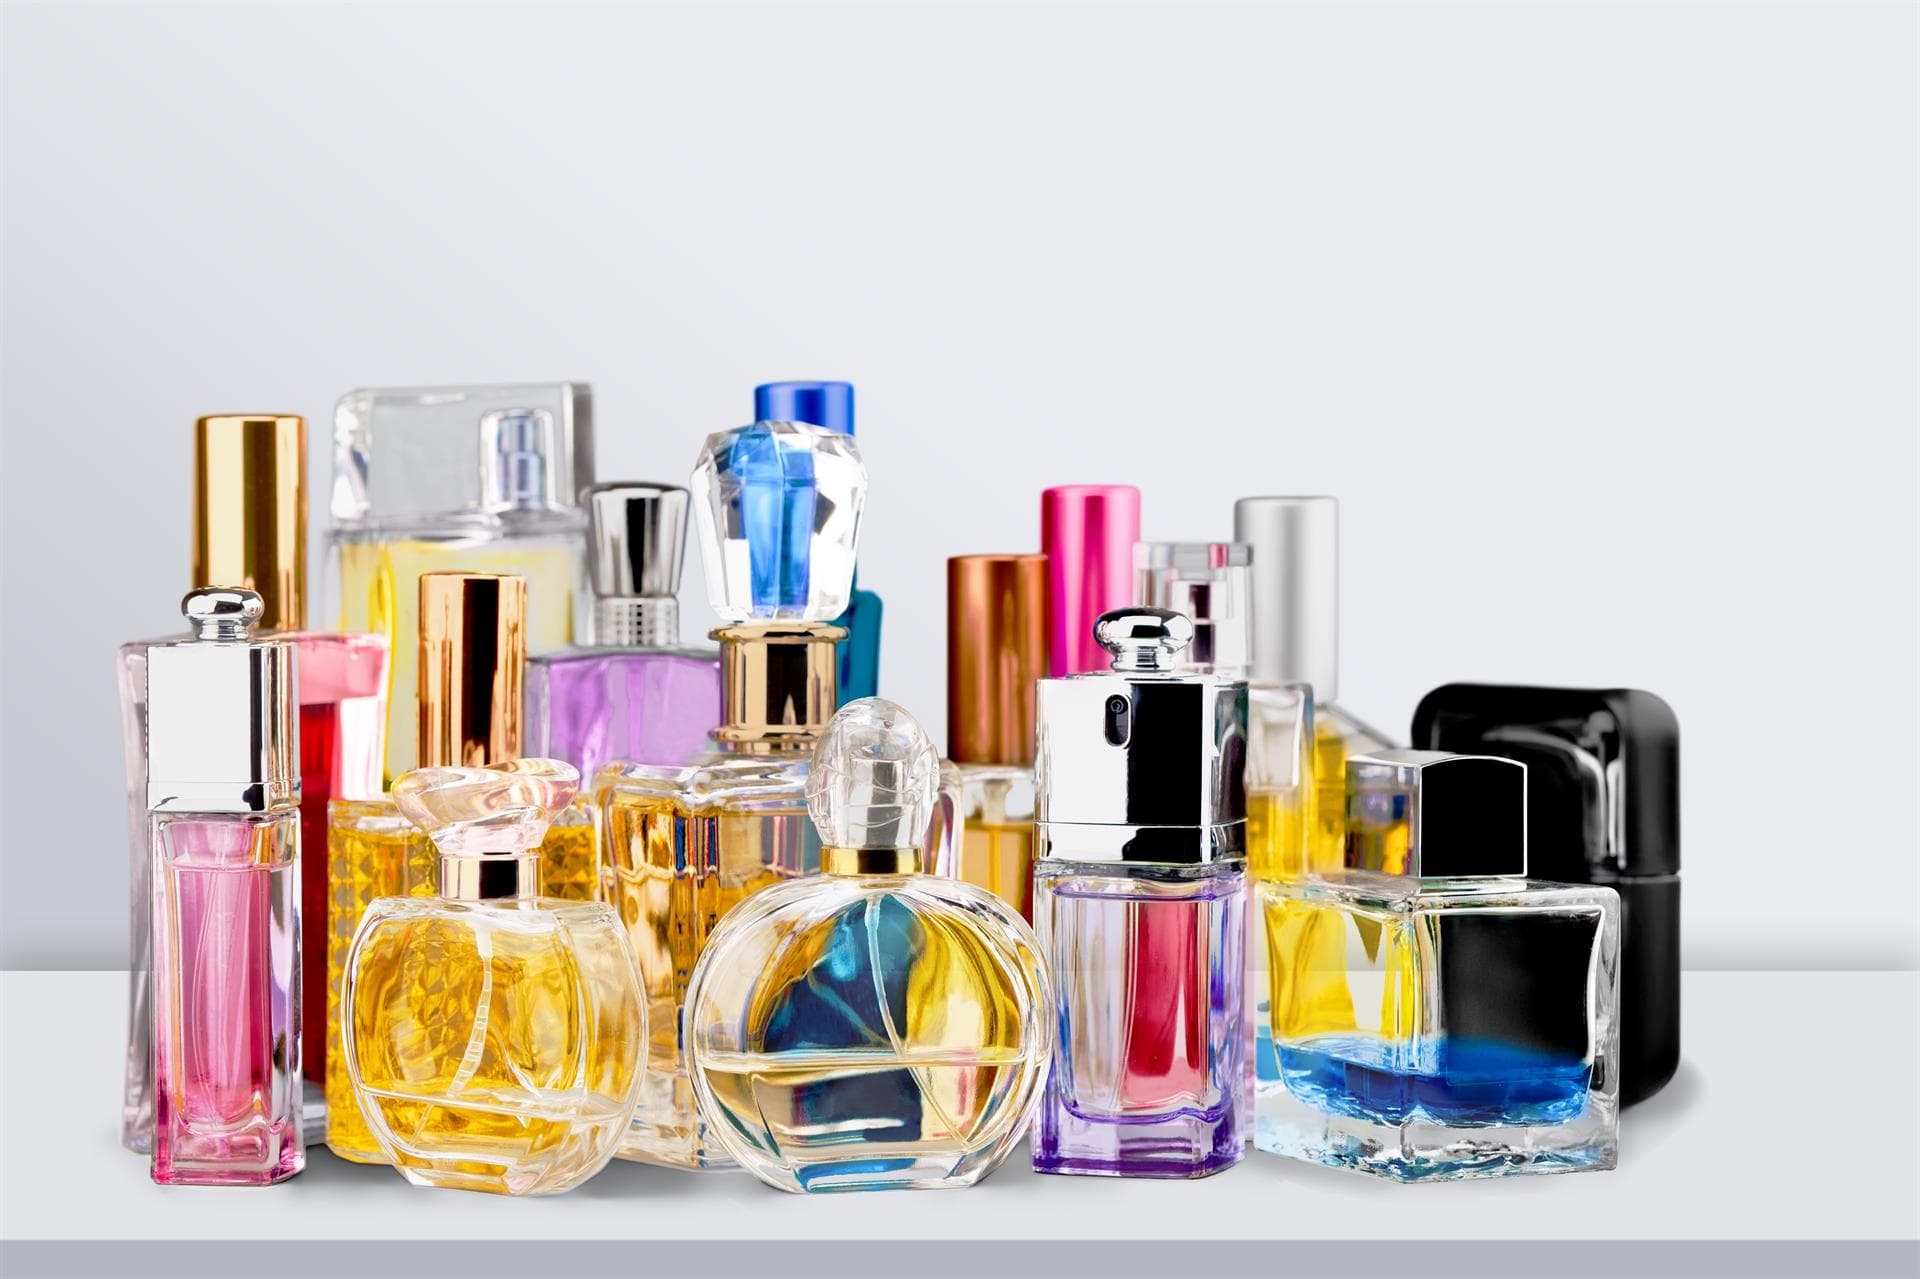 Las fragancias más exquisitas: ¿conoces los perfumes descatalogados?